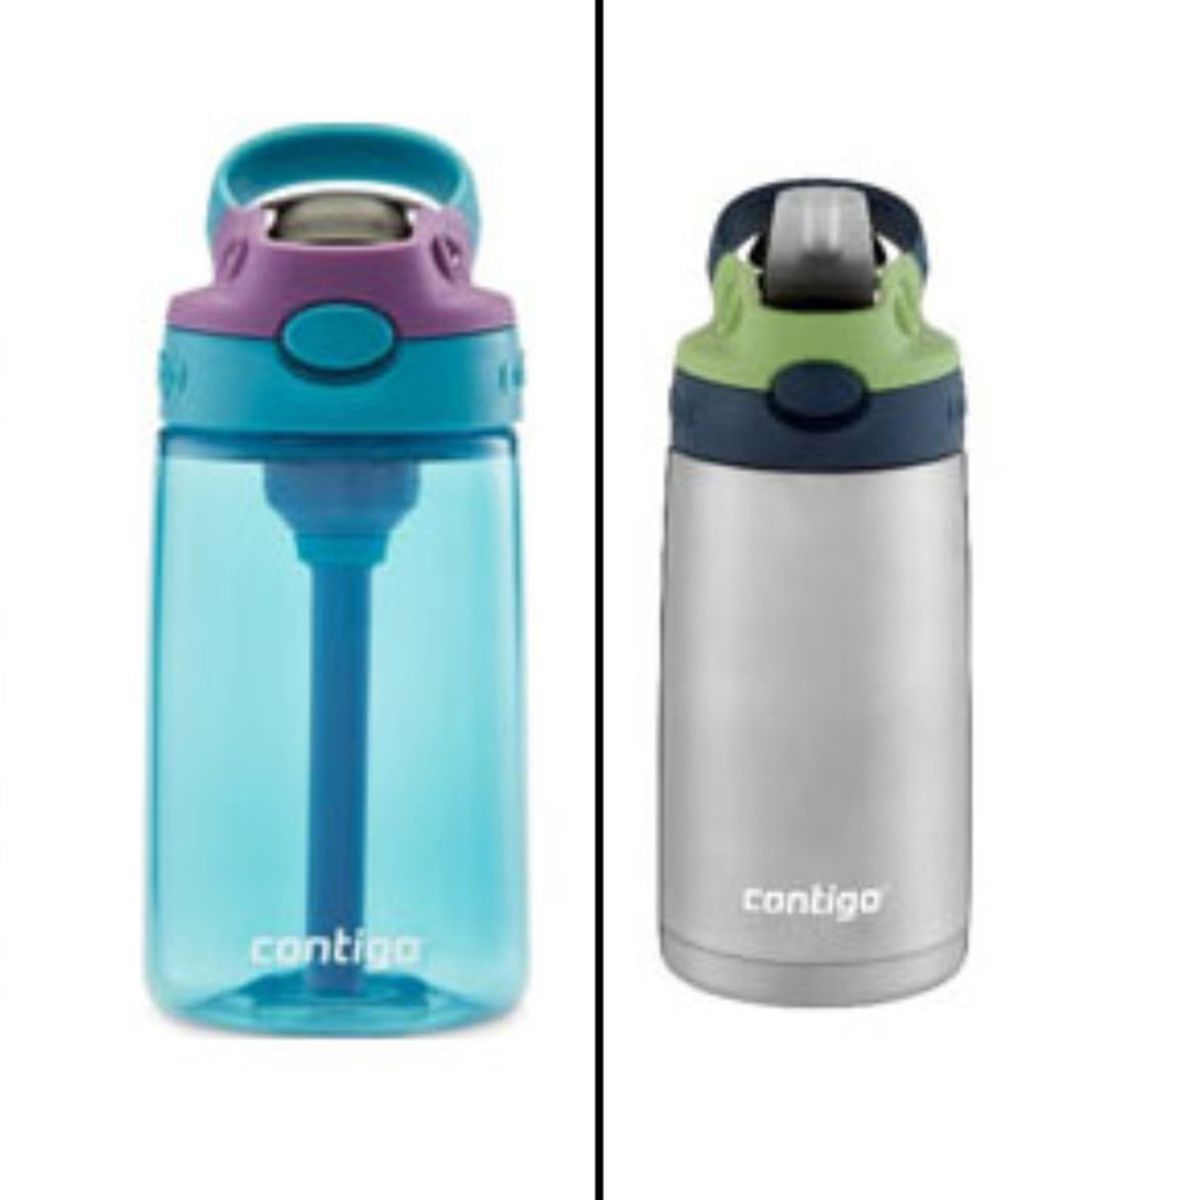 Contigo water bottles recalled for choking hazard